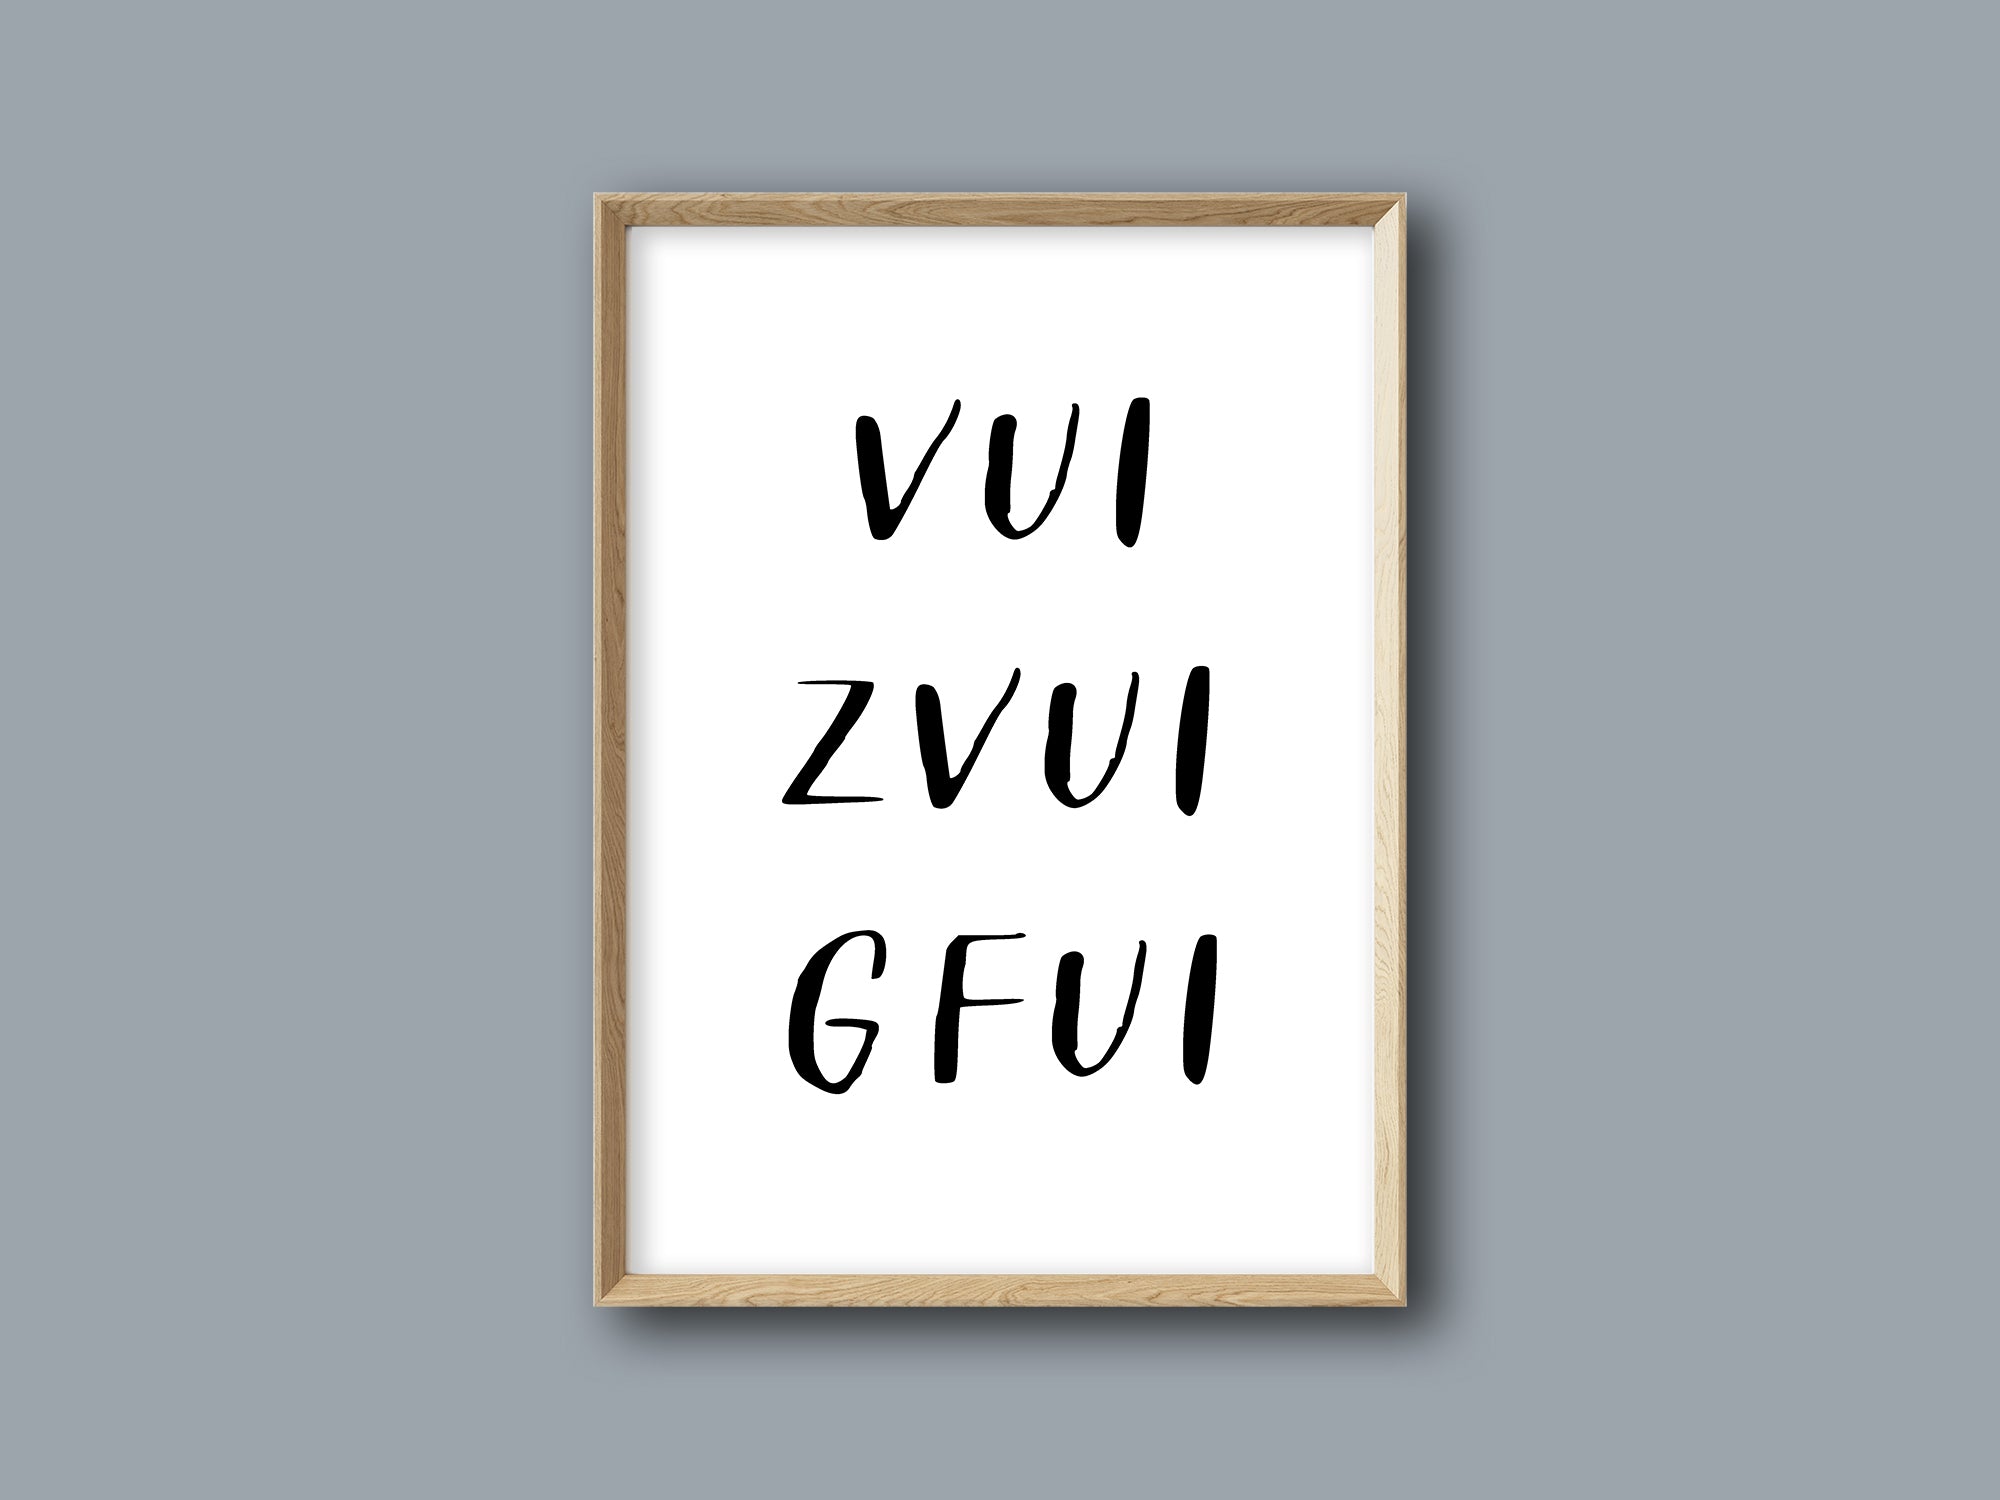 Poster "Vui zvui Gfui"